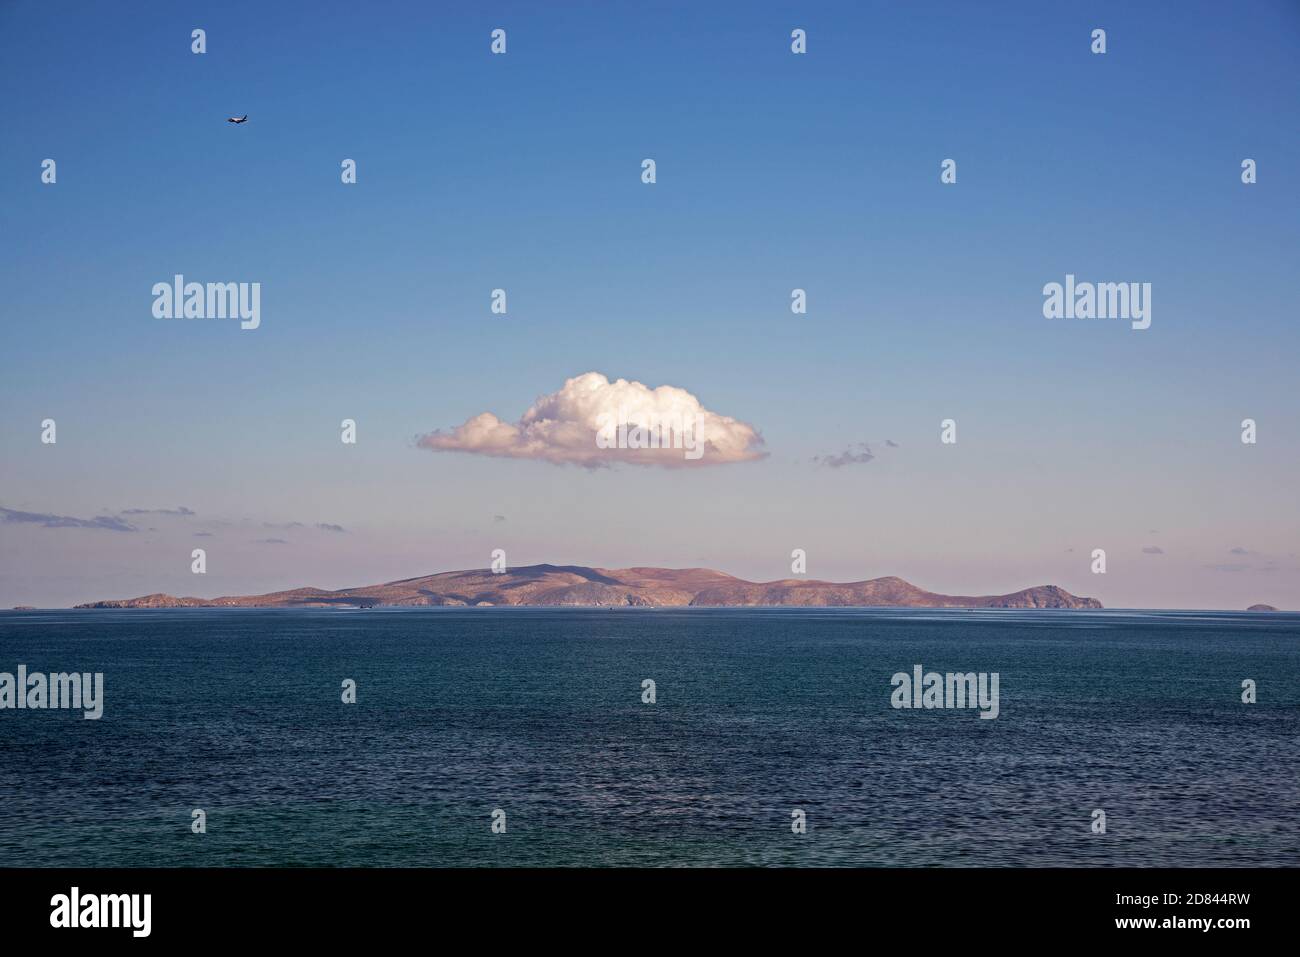 Blick auf die Insel Dia nördlich der Stadt Heraklion an einem Tag mit klarem Himmel. Flugzeug, das gerade abgefahren ist, ist auf der linken Seite sichtbar. Stockfoto